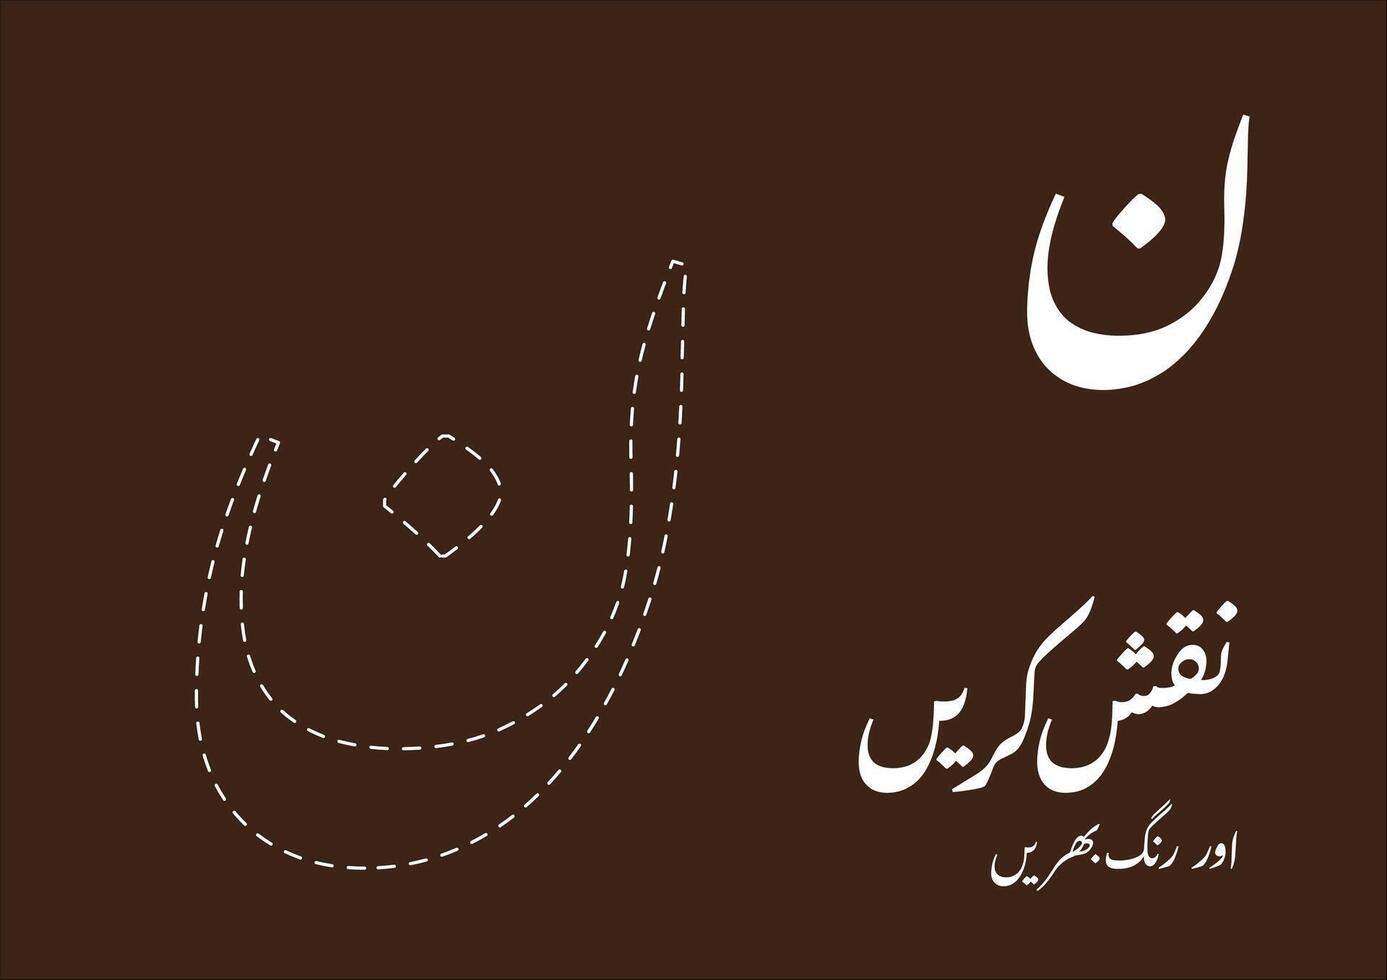 rastro y color urdu alfabetos mundo maravilloso cautivador para creativo niños vector